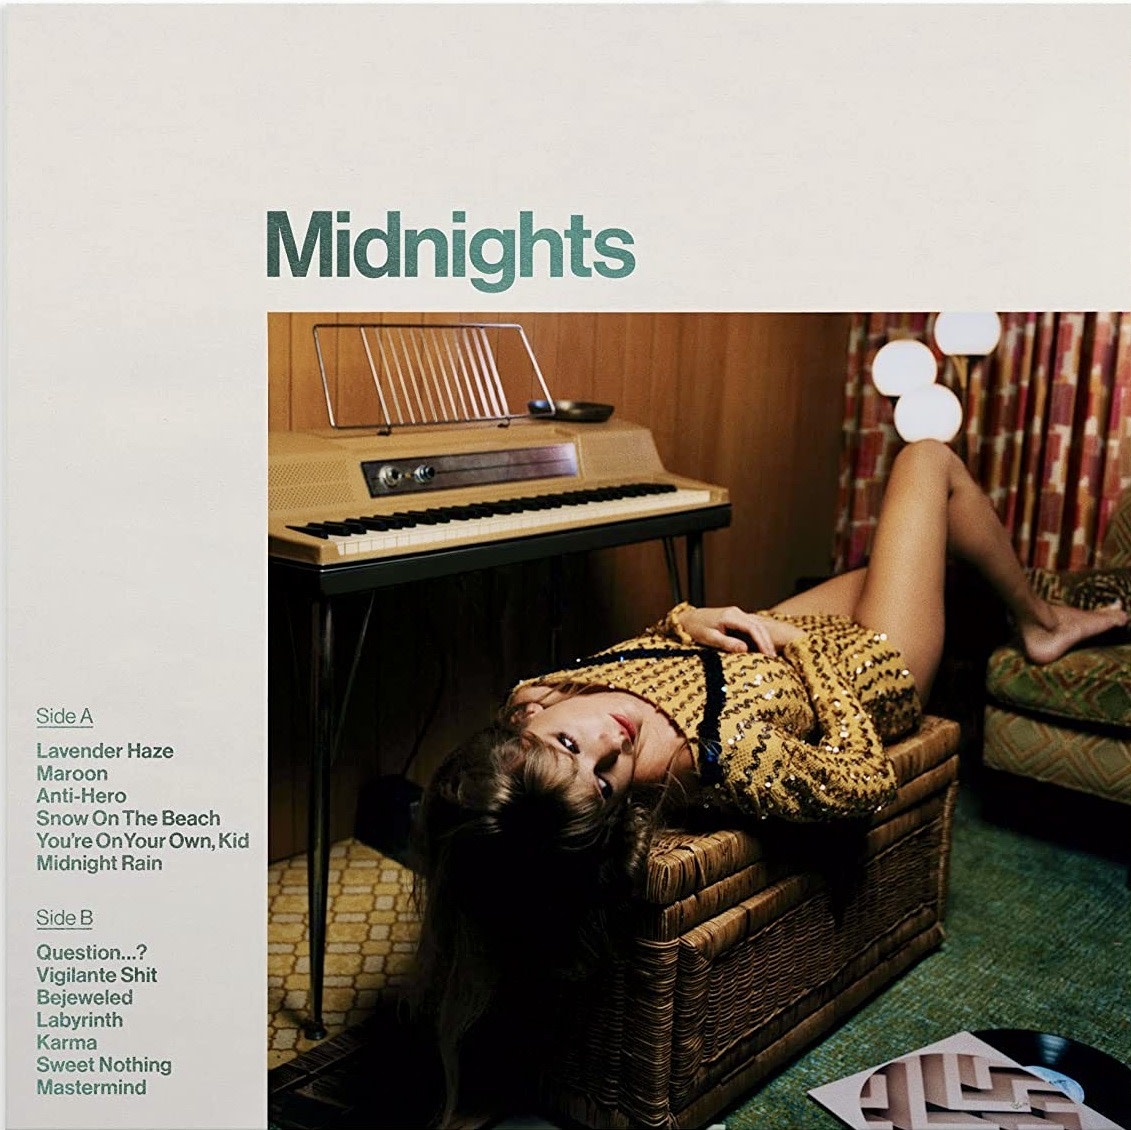 Taylor Swift - Midnights (Jade Green Vinyl)